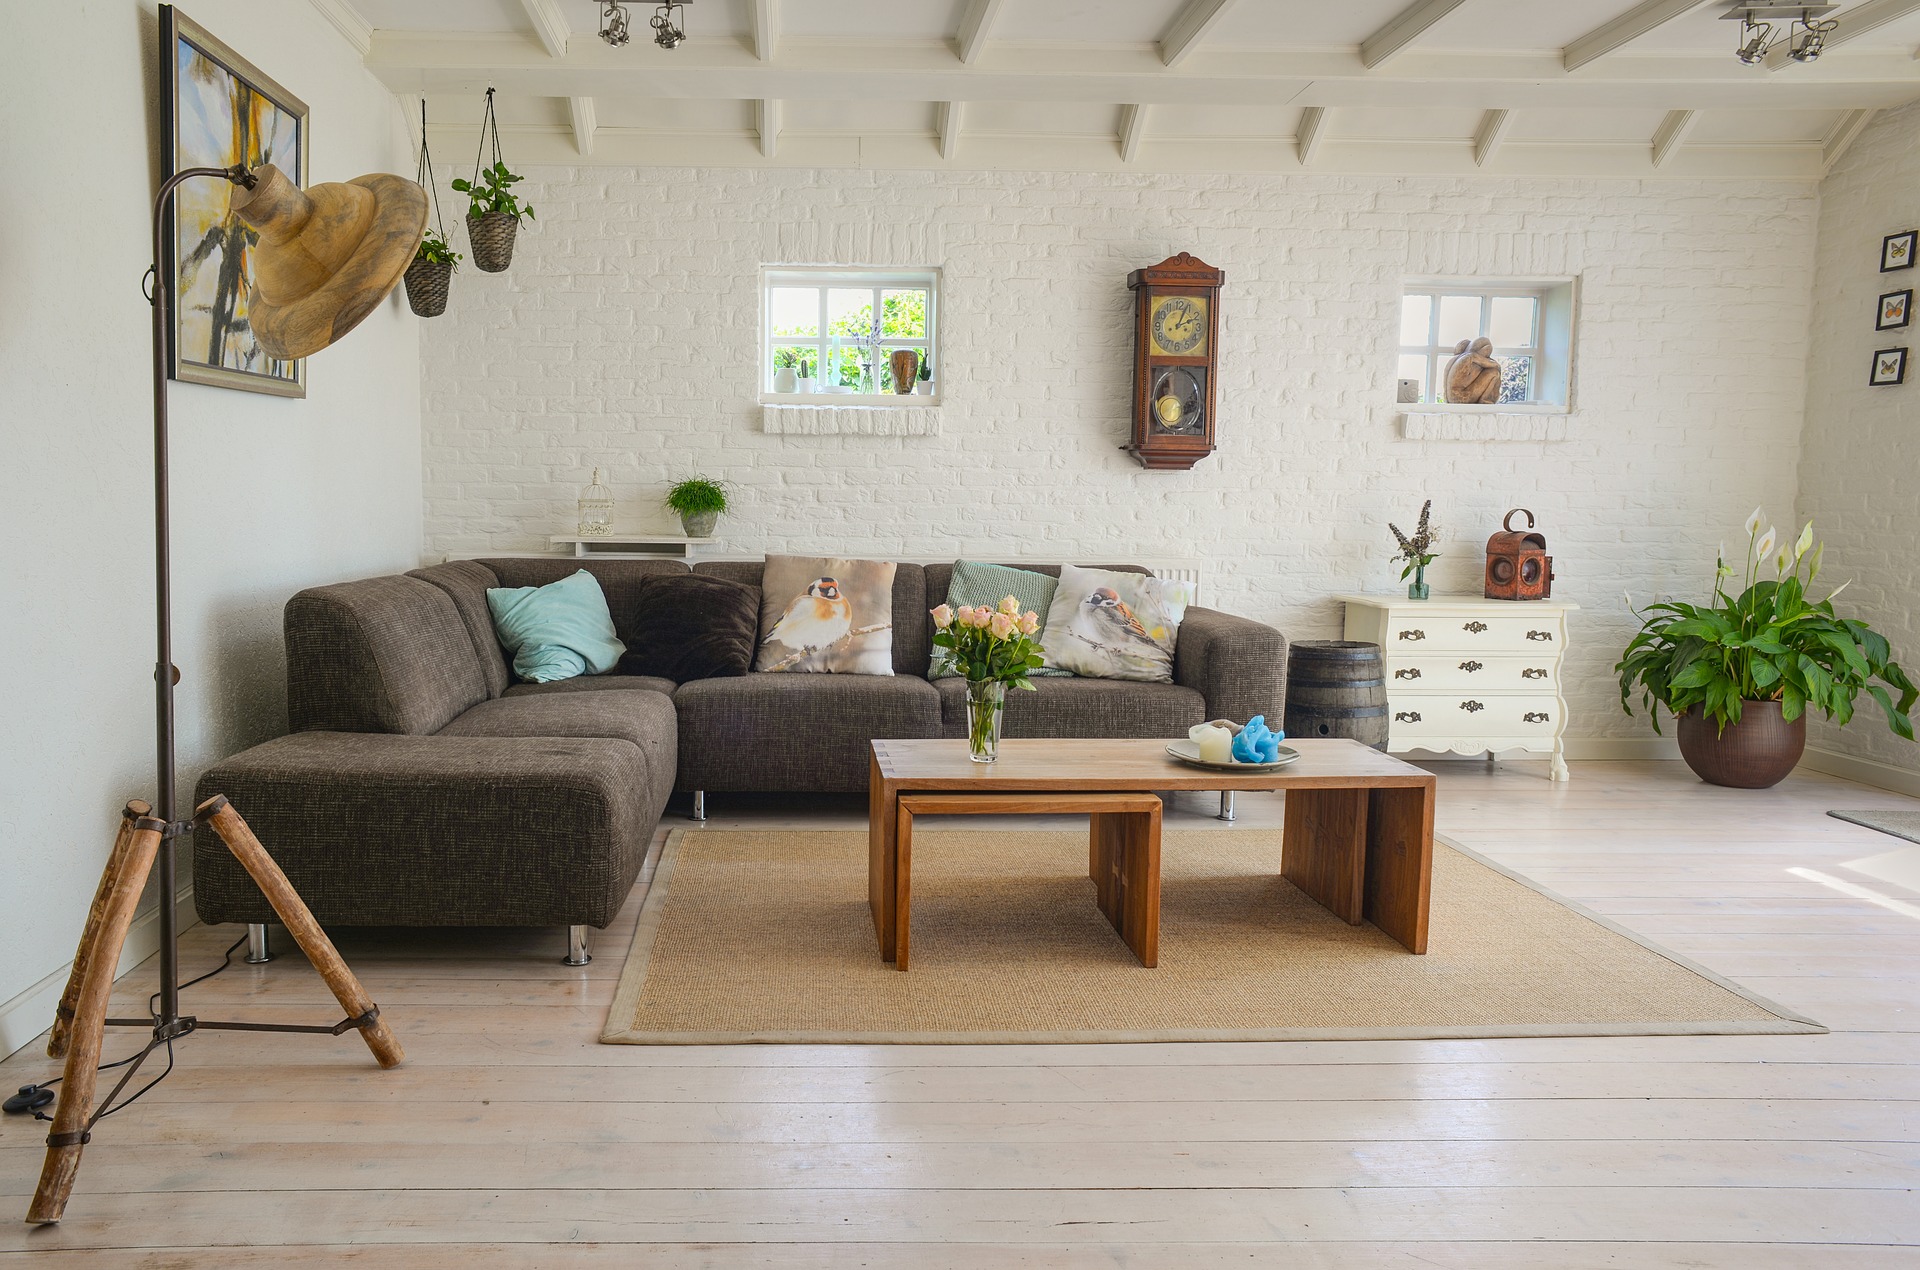 Vinyl, koberec nebo dlažba? Který typ podlahy zvolíte do svého bytu vy?